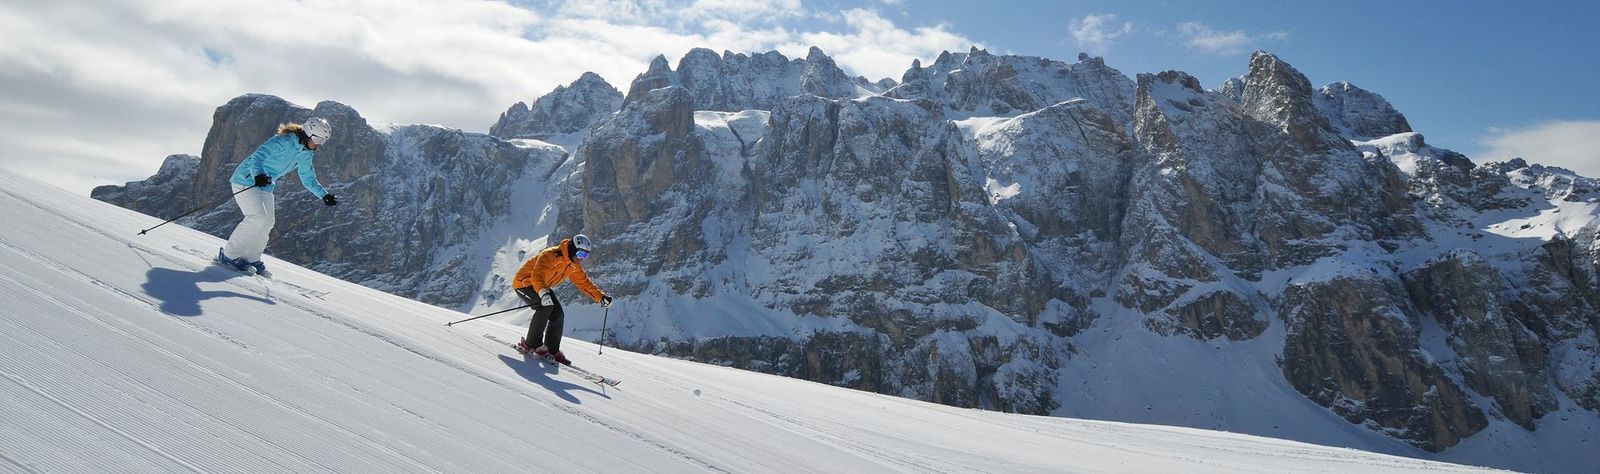 South Tyrol Ski Holidays